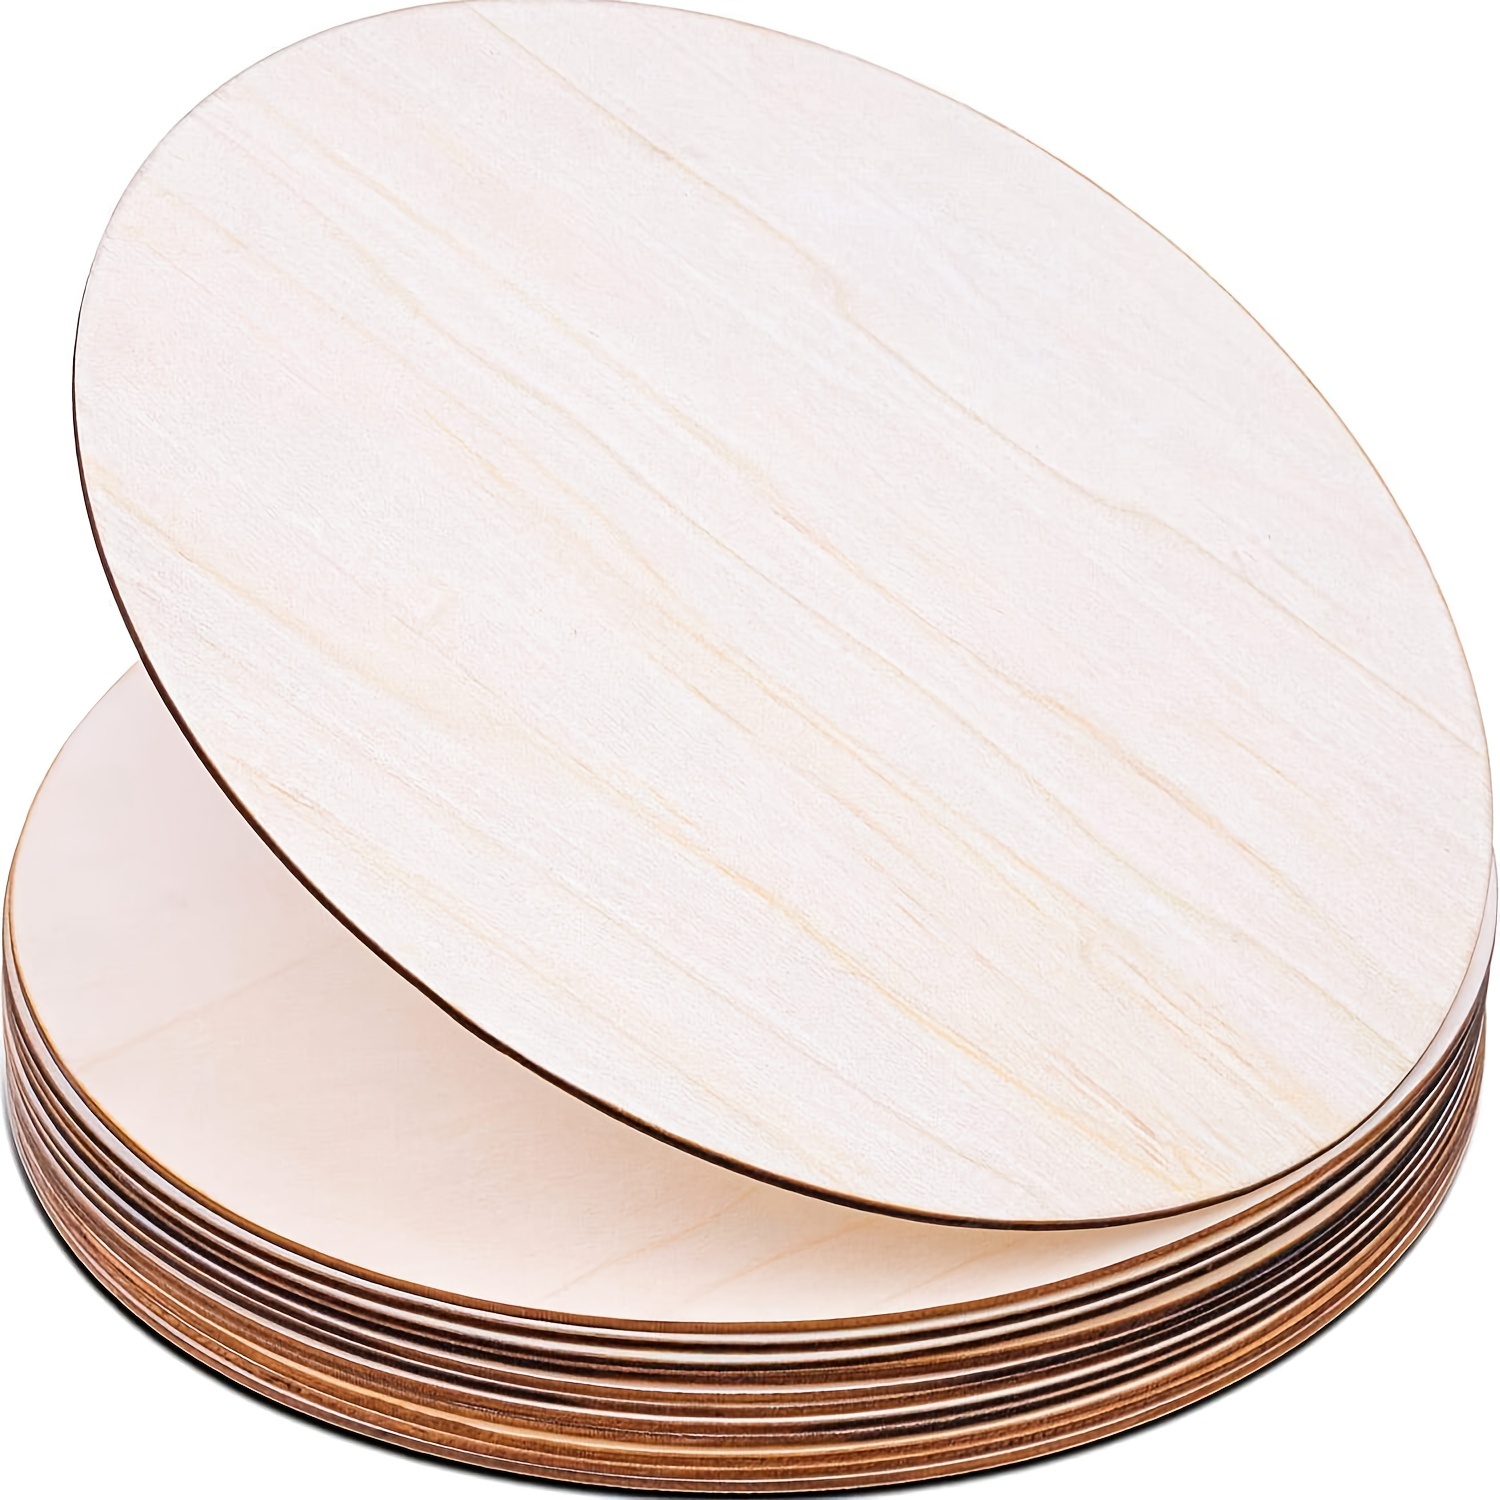 Lot de 12 disques en bois ronds de 12 à 13 cm en bois naturel d